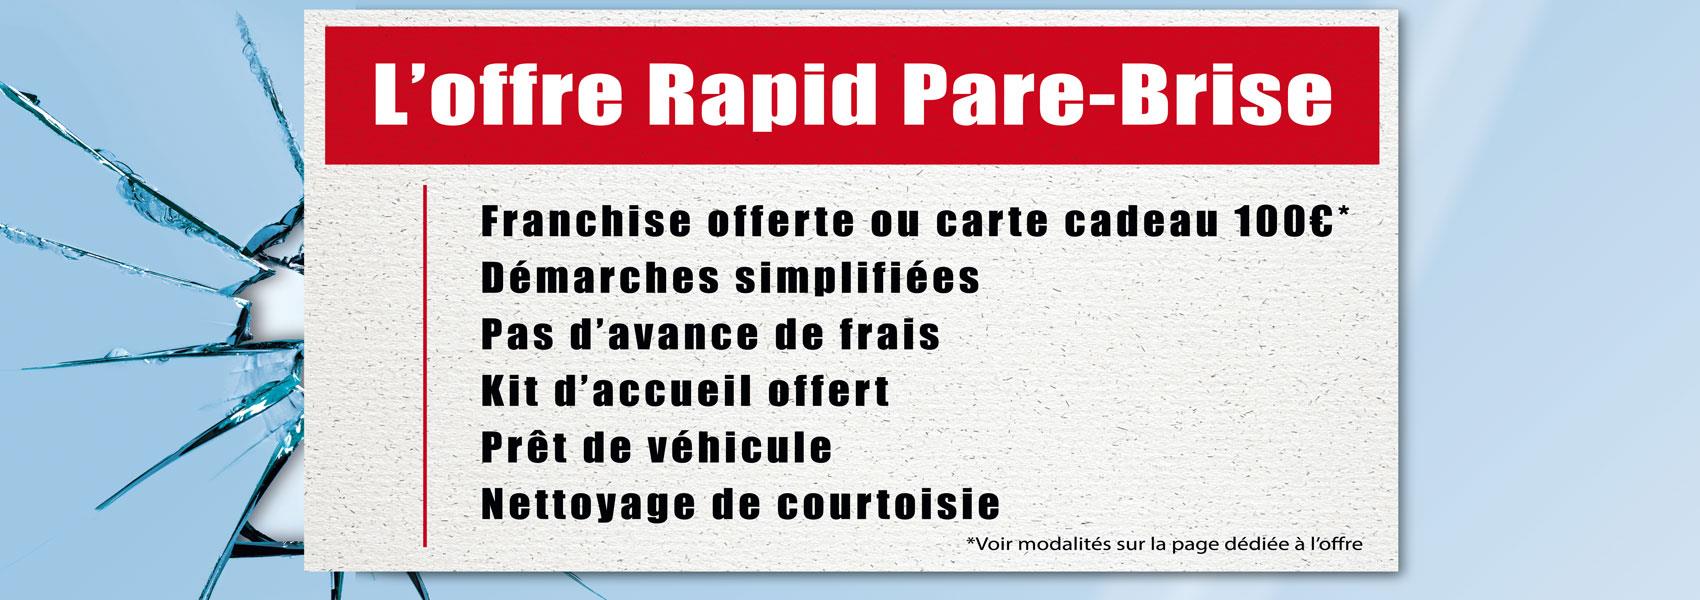 L' offre Rapid Pare-Brise : franchise offerte ou carte cadeau 100€